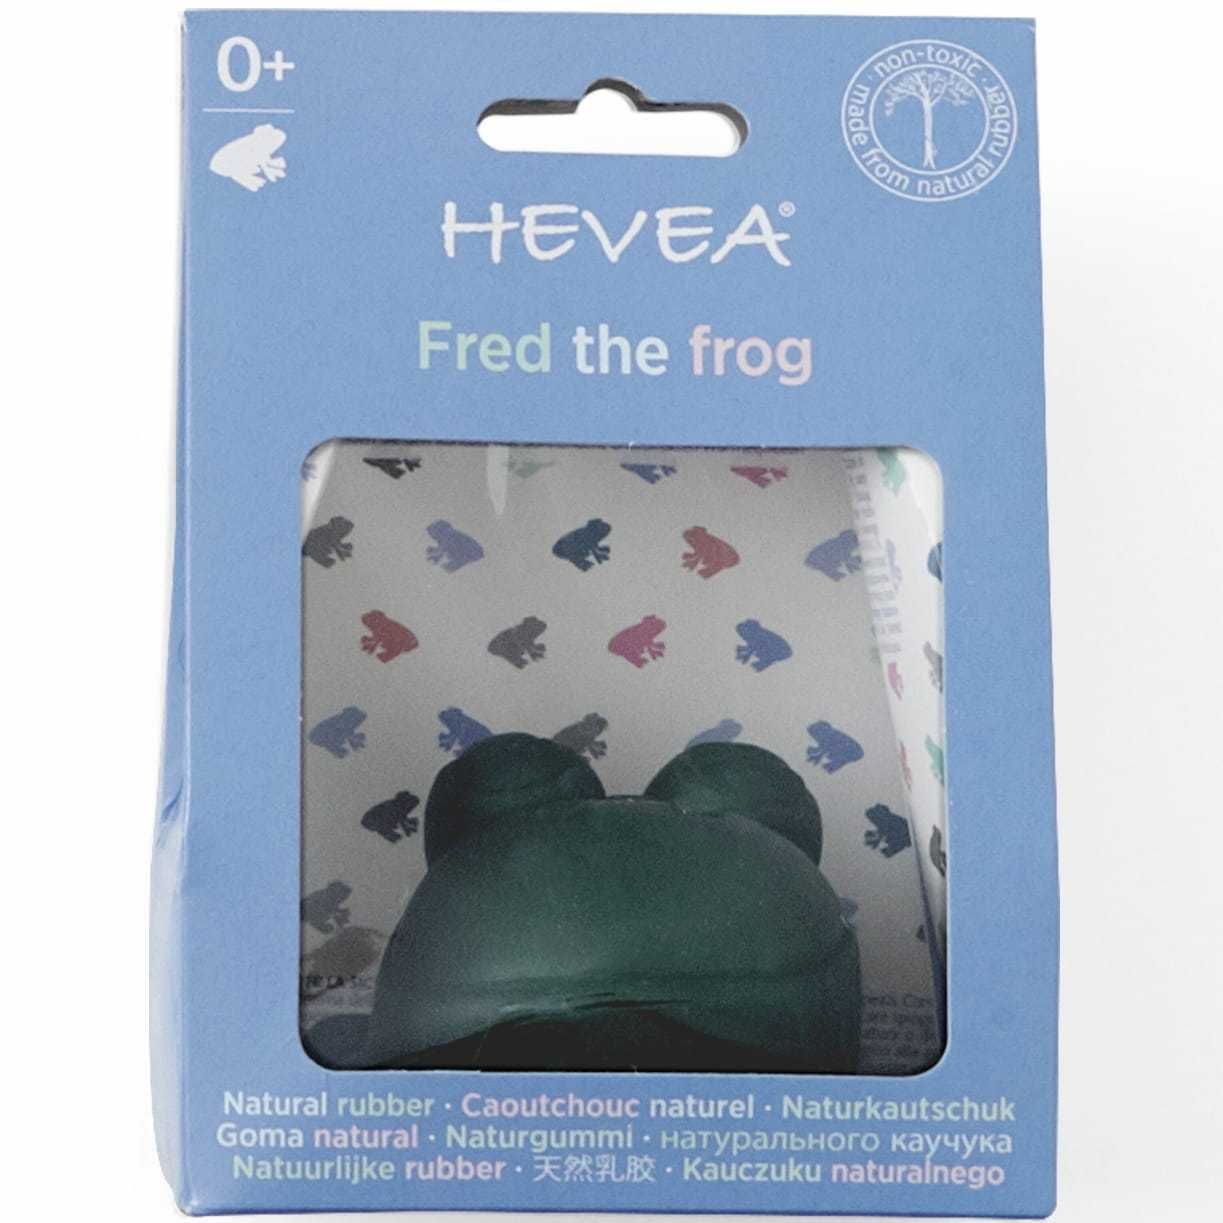 Игрушка для ванной Fred Frog из натурального каучука - Hevea 0+